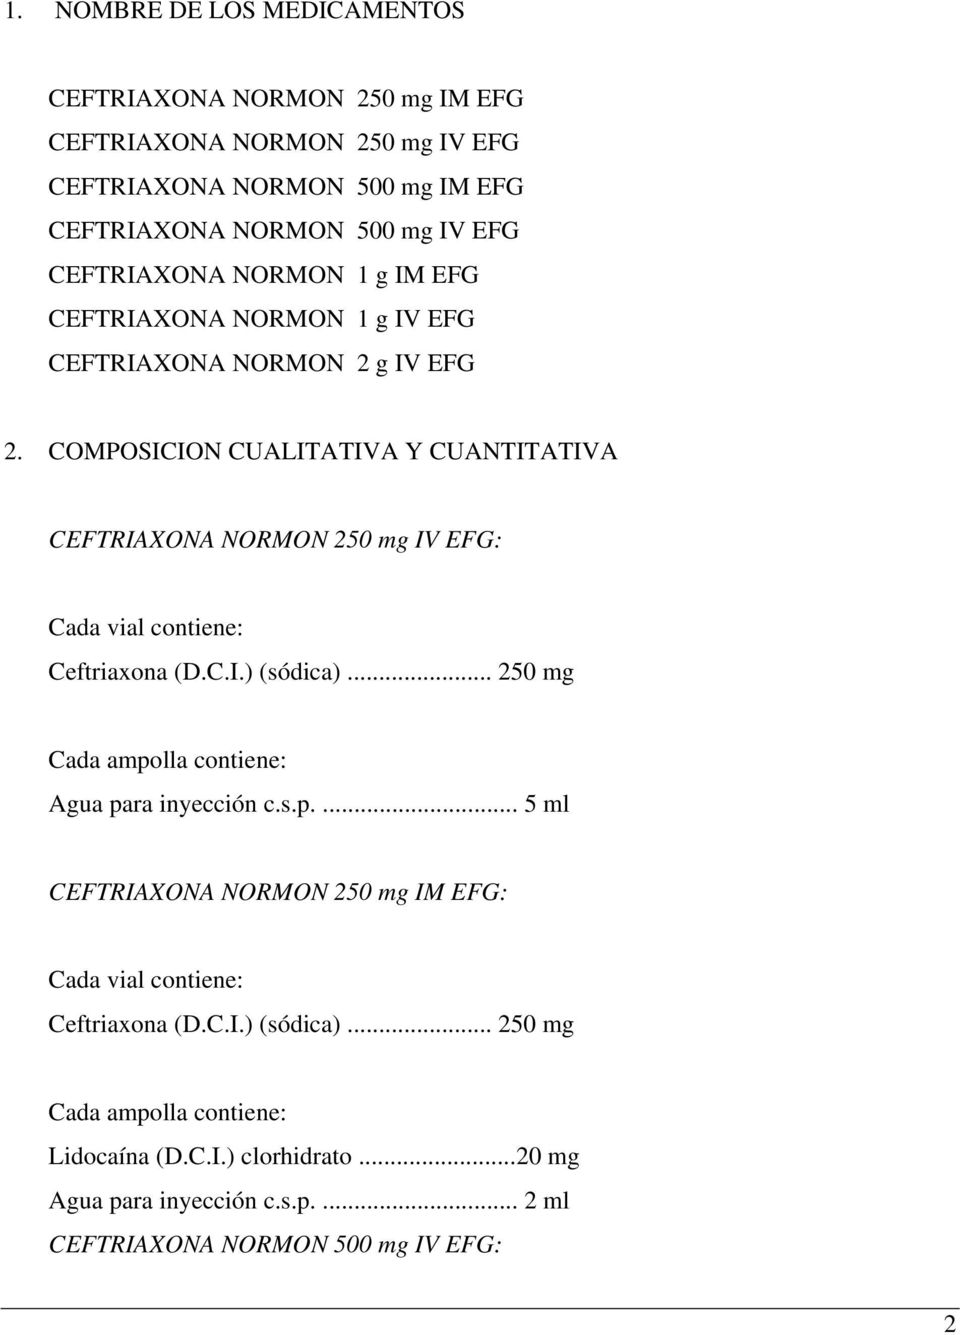 COMPOSICION CUALITATIVA Y CUANTITATIVA CEFTRIAXONA NORMON 250 mg IV EFG: Cada vial contiene: Ceftriaxona (D.C.I.) (sódica).